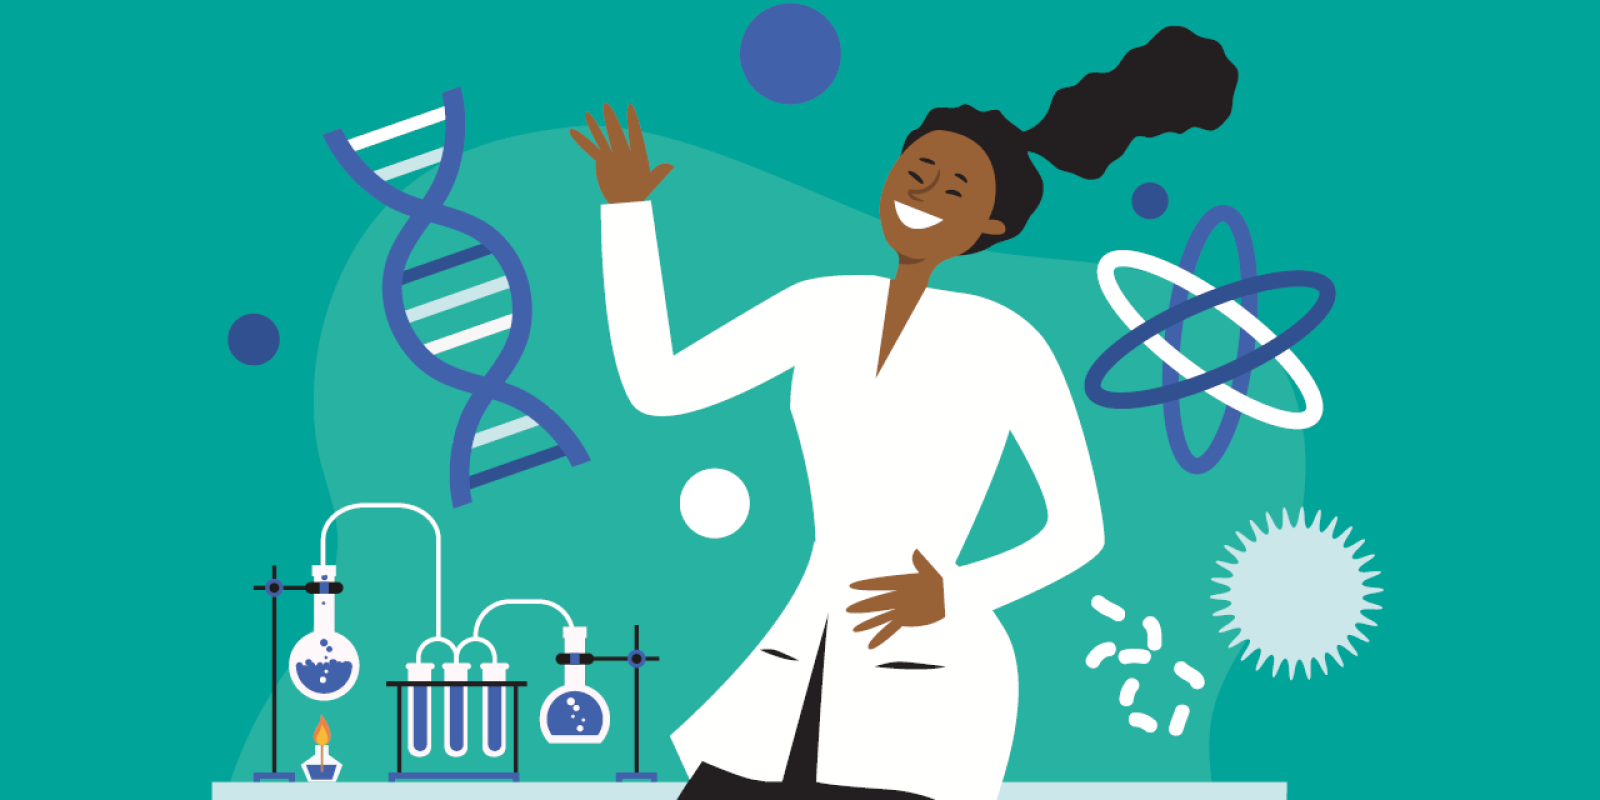 Mulheres na ciência: entre avanços e dilemas históricos | Futurando especial